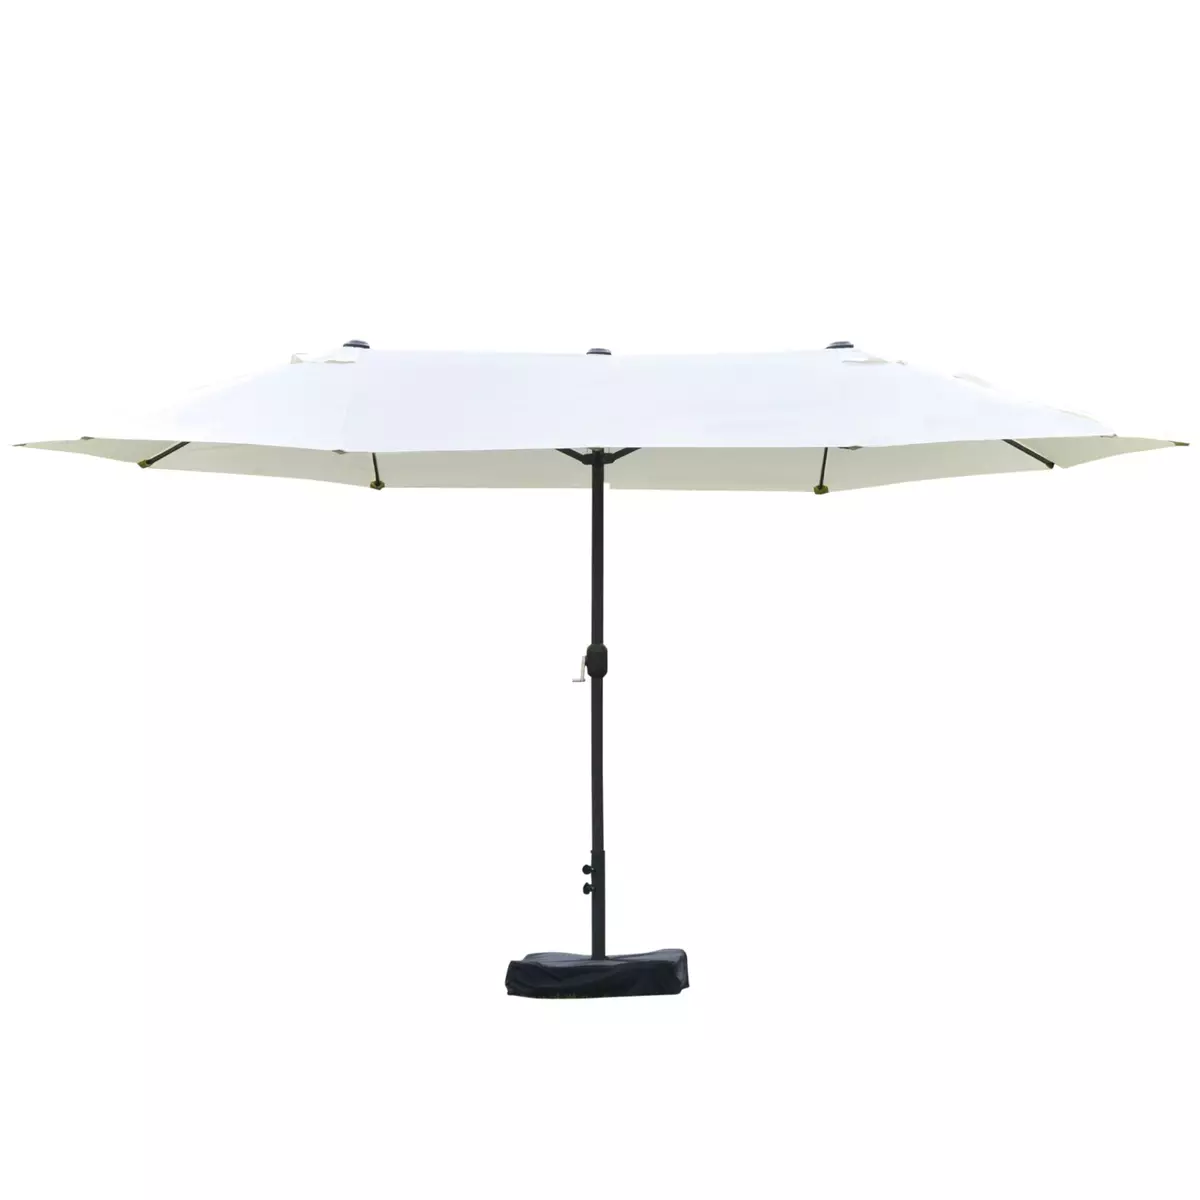 OUTSUNNY Parasol de jardin XXL parasol grande taille 4,6L x 2,7l x 2,4H cm ouverture fermeture manivelle acier polyester haute densité crème